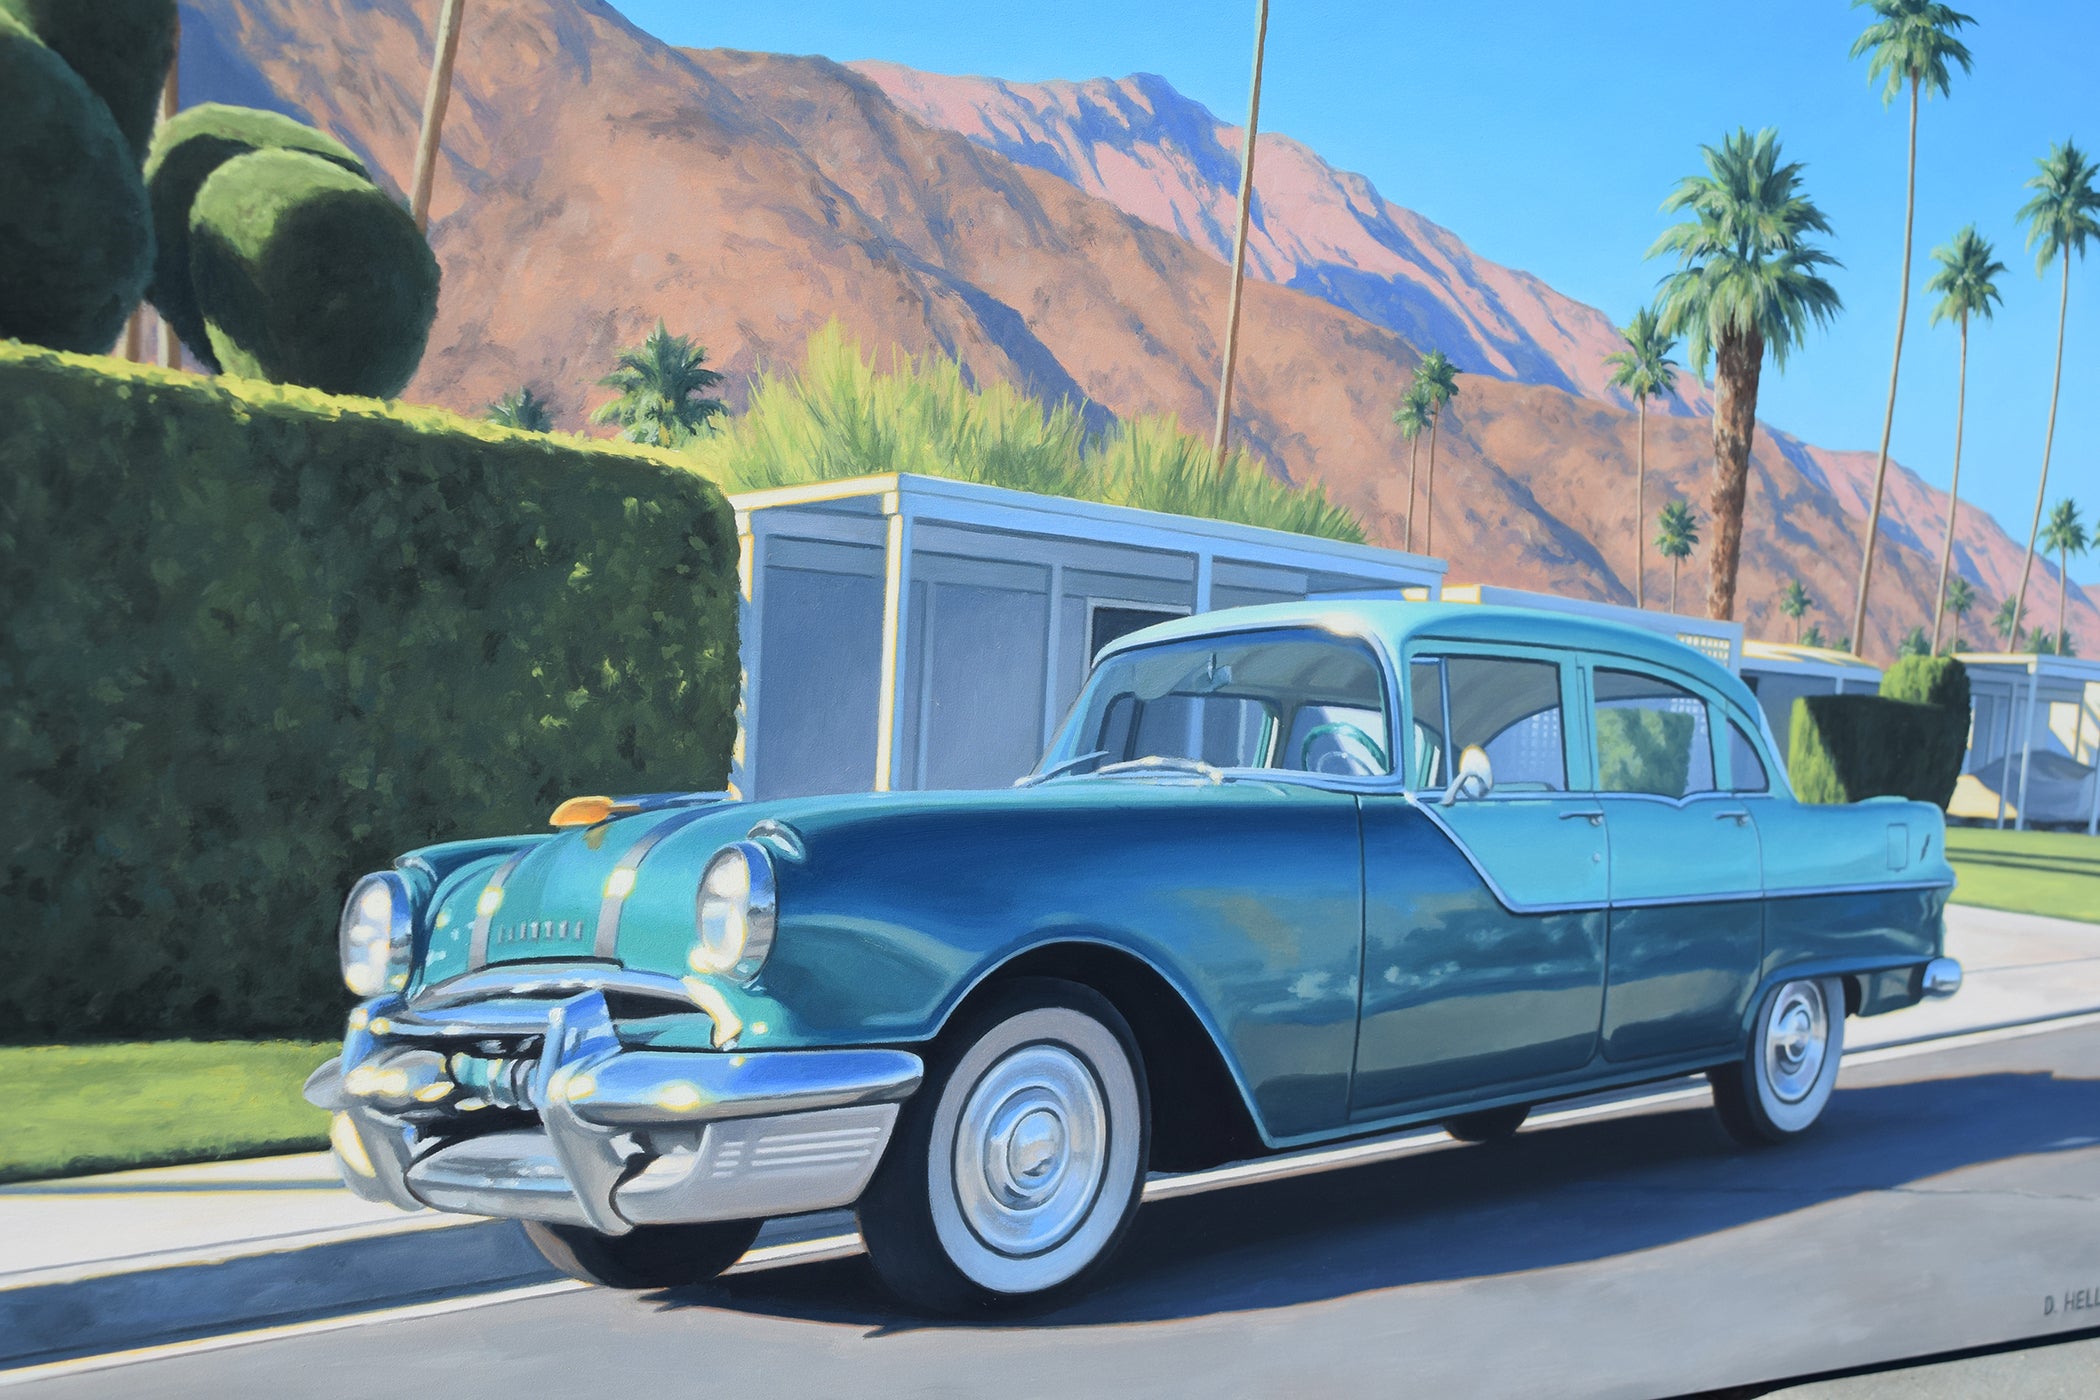 "Palm Springs Pontiac"